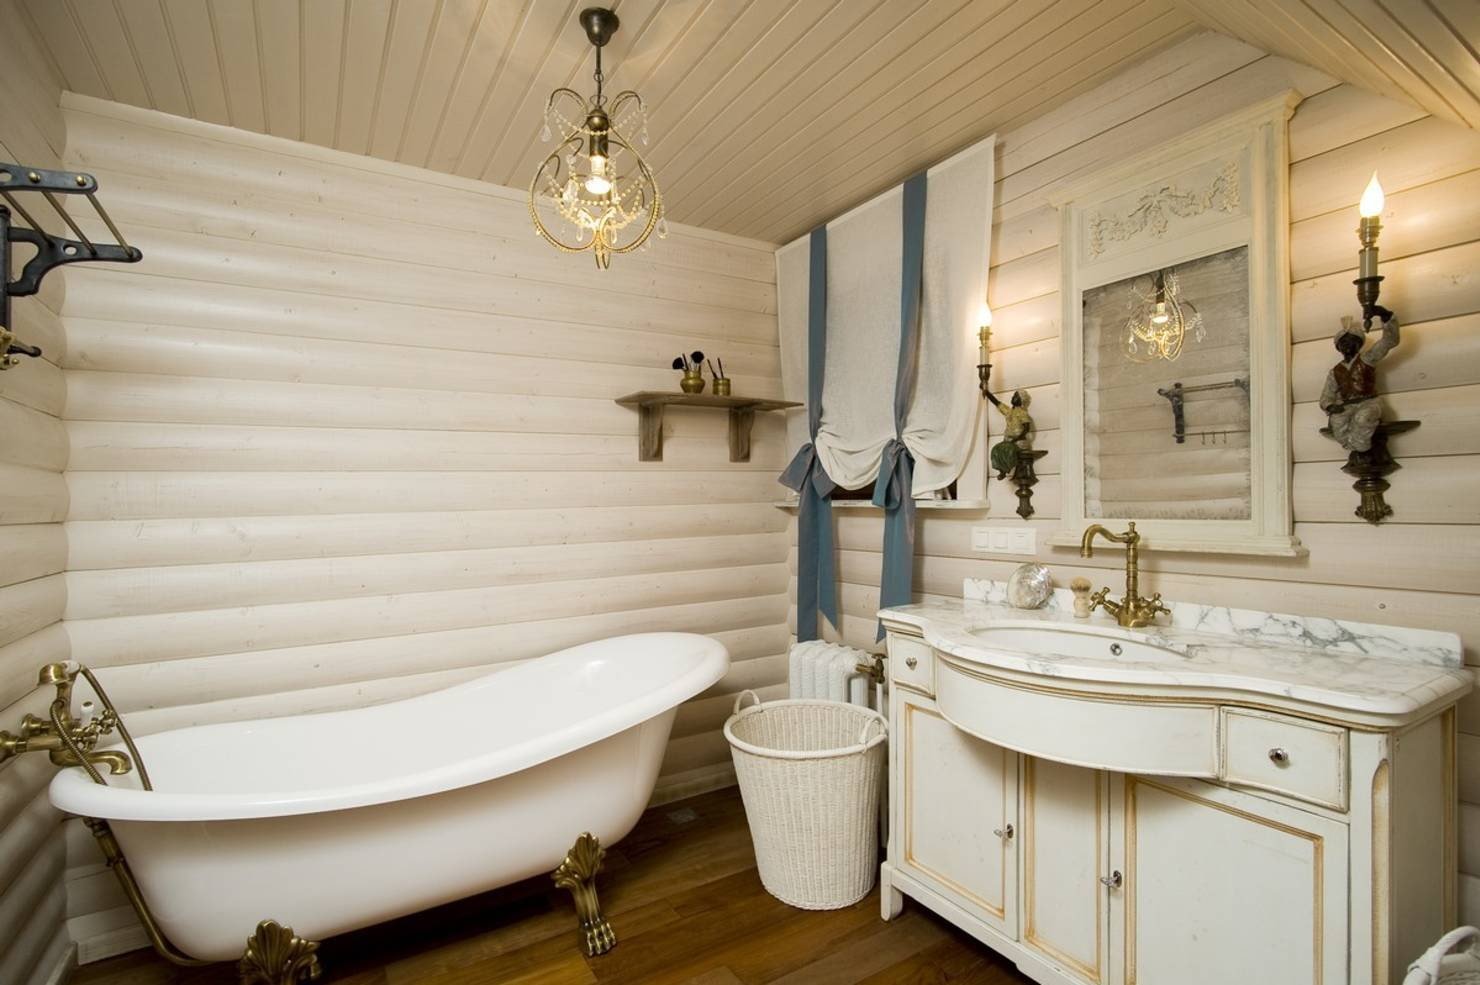 Просмотрите фото ниже, чтобы увидеть примеры ванных комнат с имитацией бруса